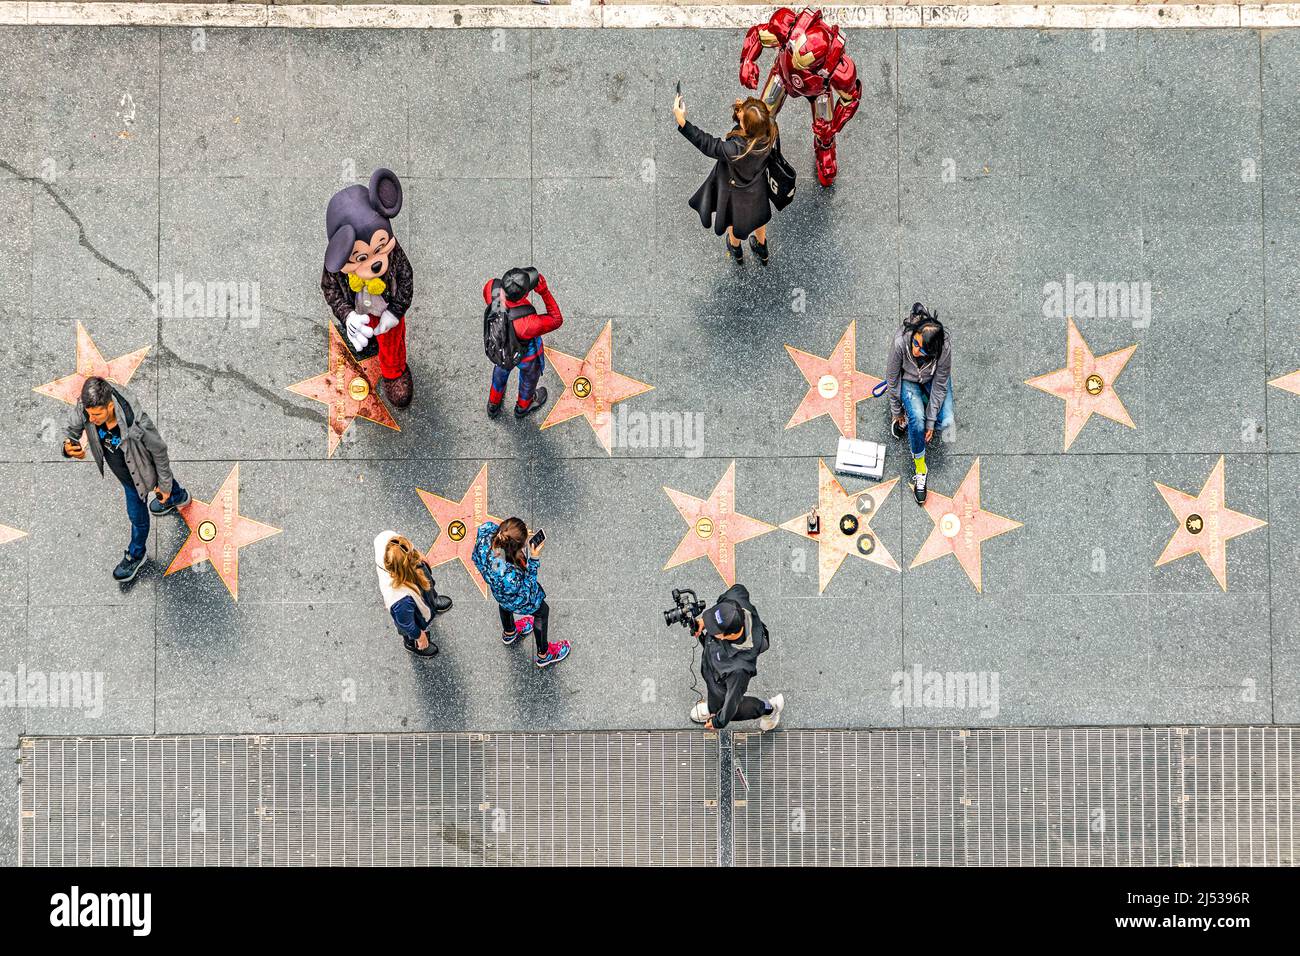 Los Angeles, USA - 5 marzo 2019: Antenna di passeggiata di fama con turisti in cerca di stelle e attori che guadagnano denaro posando per figure cinematografiche. Foto Stock